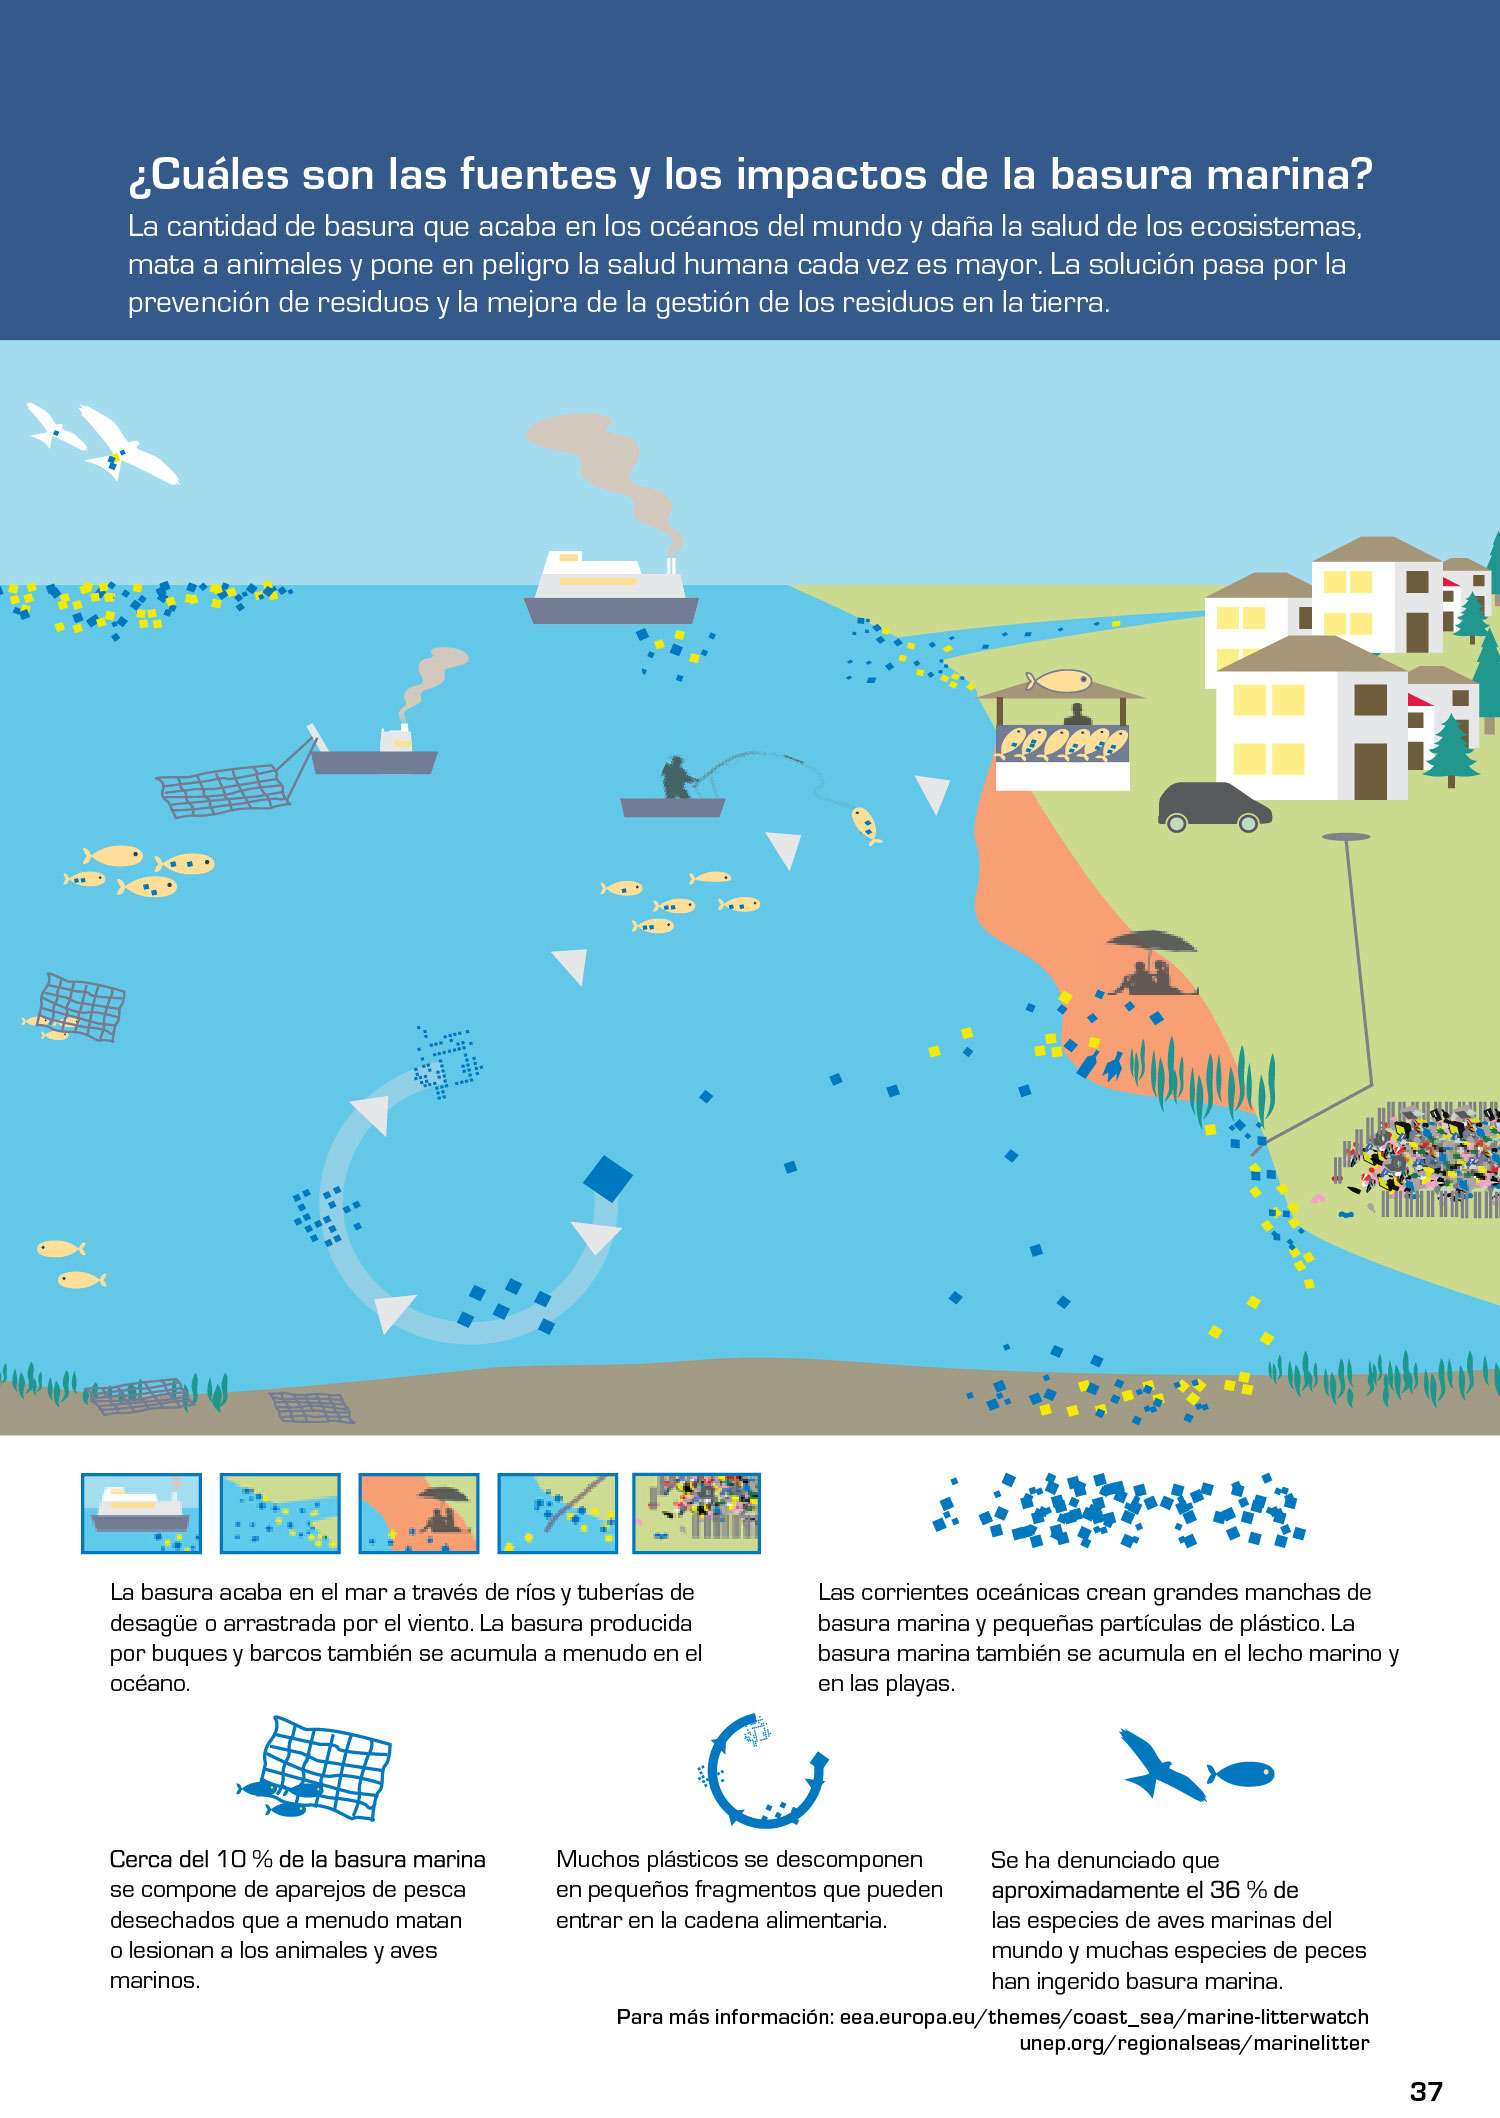 ¿Cuáles son las fuentes y los impactos de la basura marina?